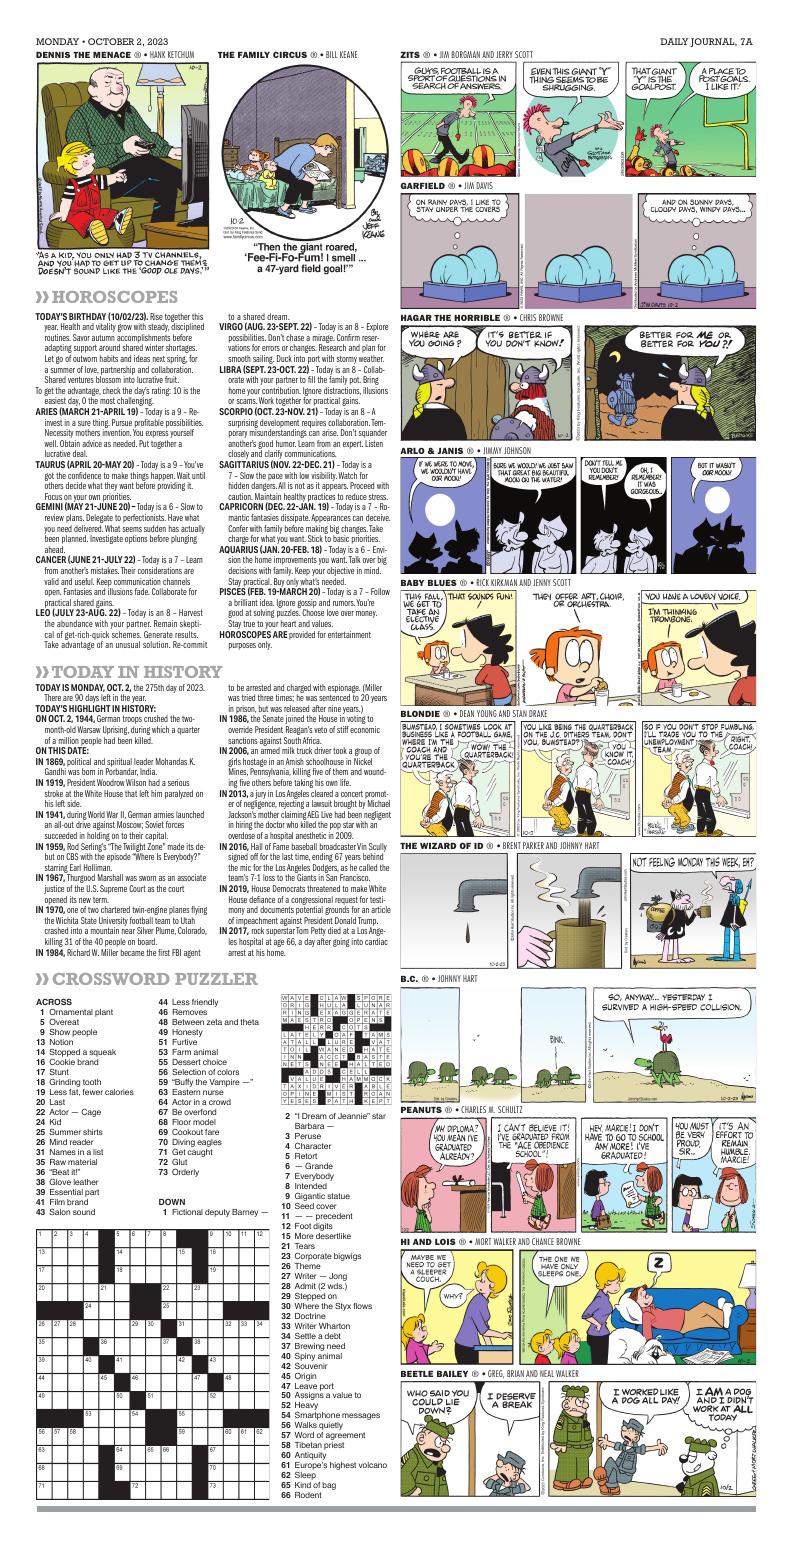 Page A7 | e-Edition | djournal.com